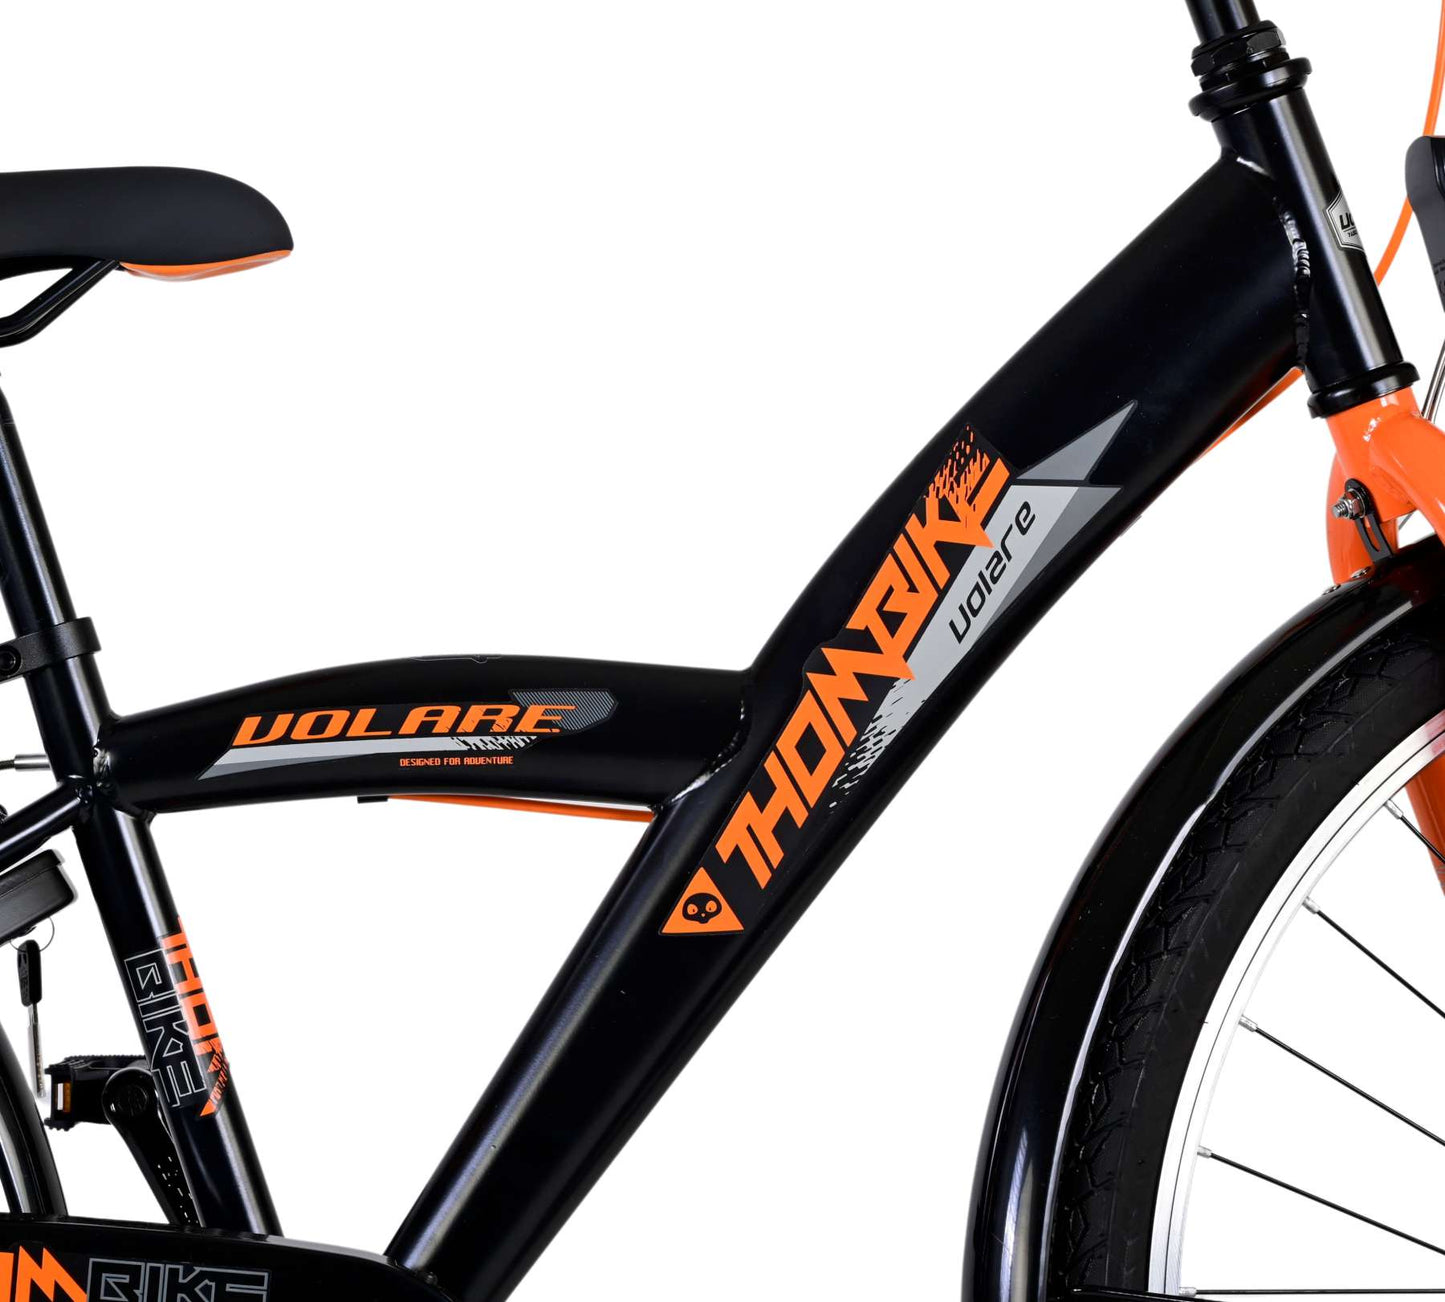 Bike para niños Volare Thombike - Niños - 26 pulgadas - Naranja negra - Dos frenos de mano